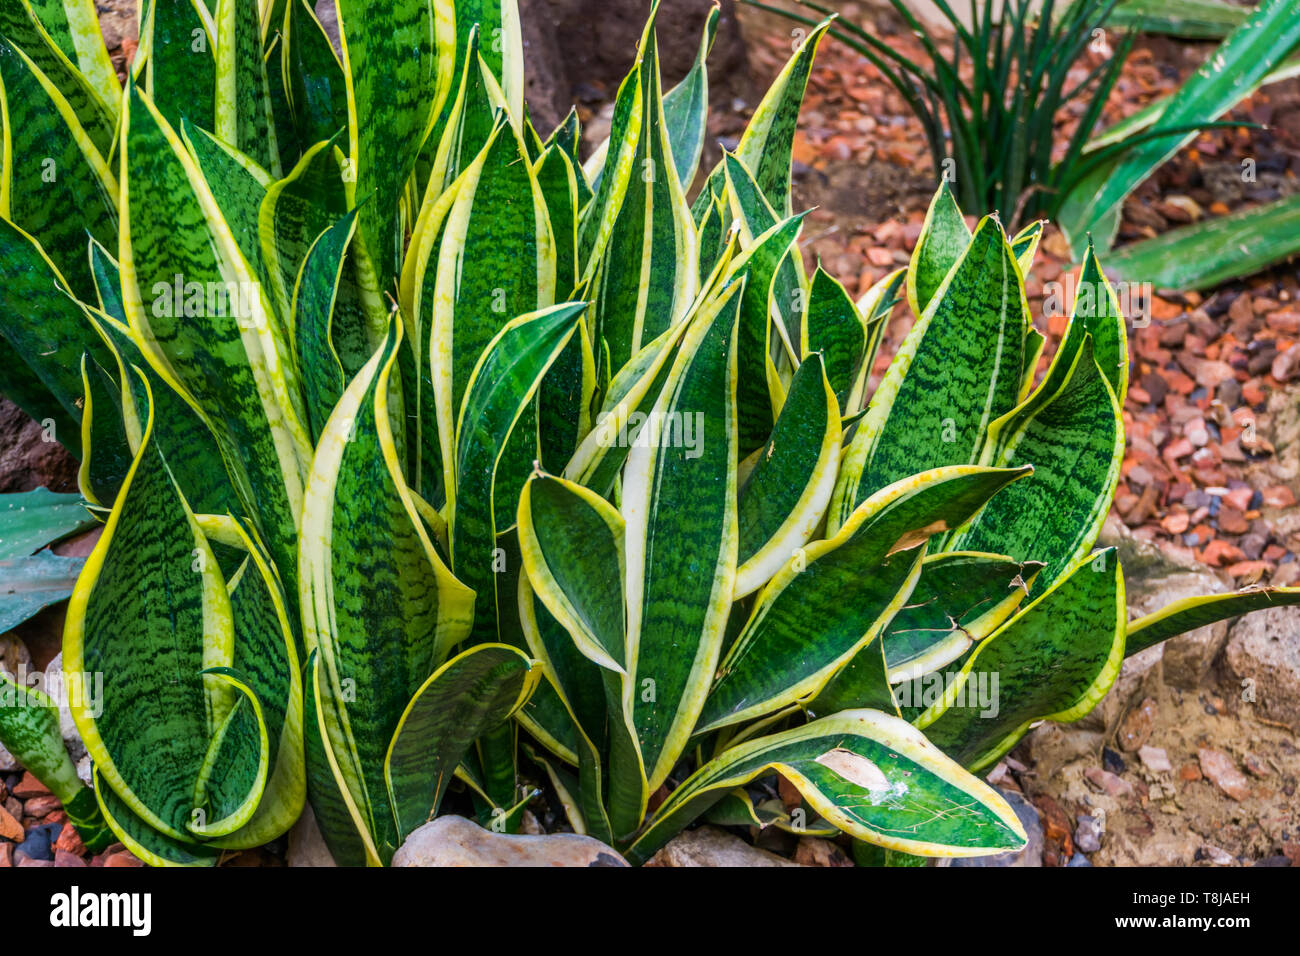 Les feuilles des plantes de serpent en libre dans un jardin tropical, très populaires dans l'horticulture, des plantes de jardin et plantes décoratives Banque D'Images